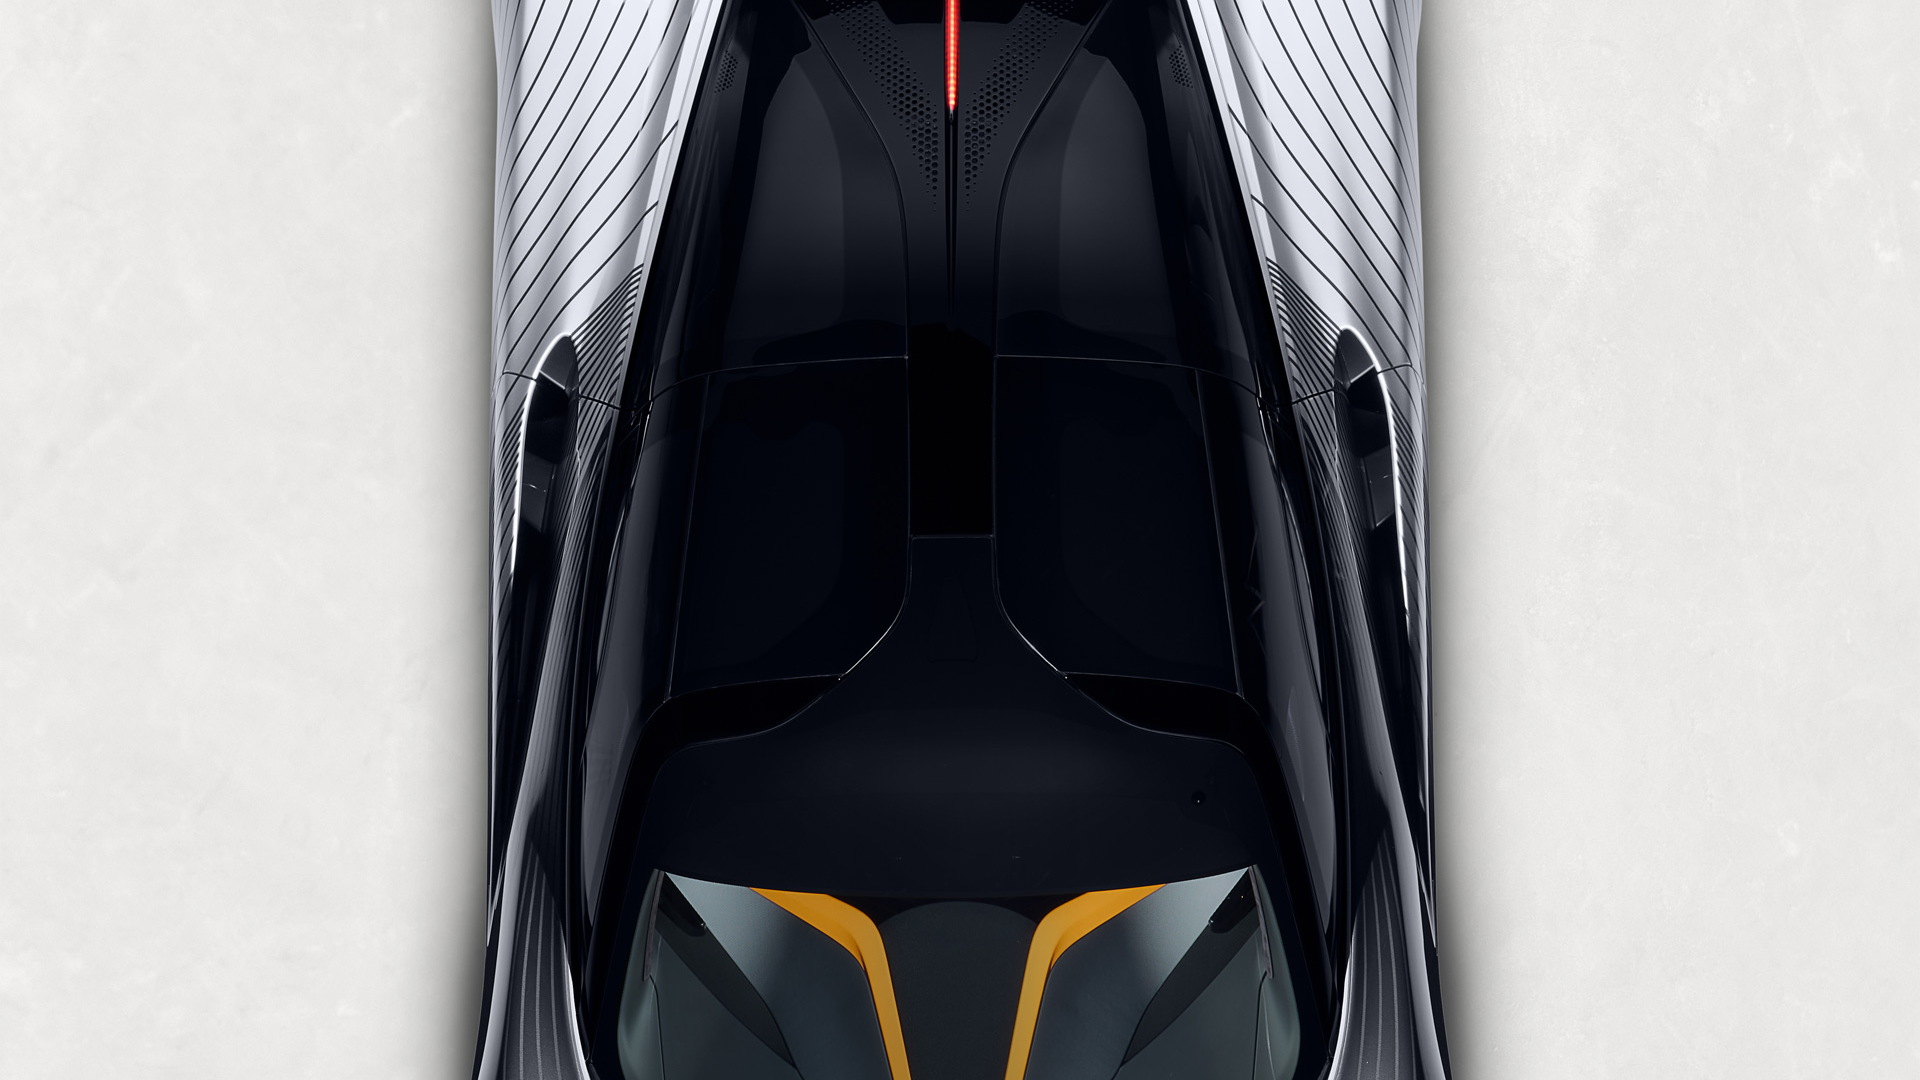 McLaren Speedtail “Albert”